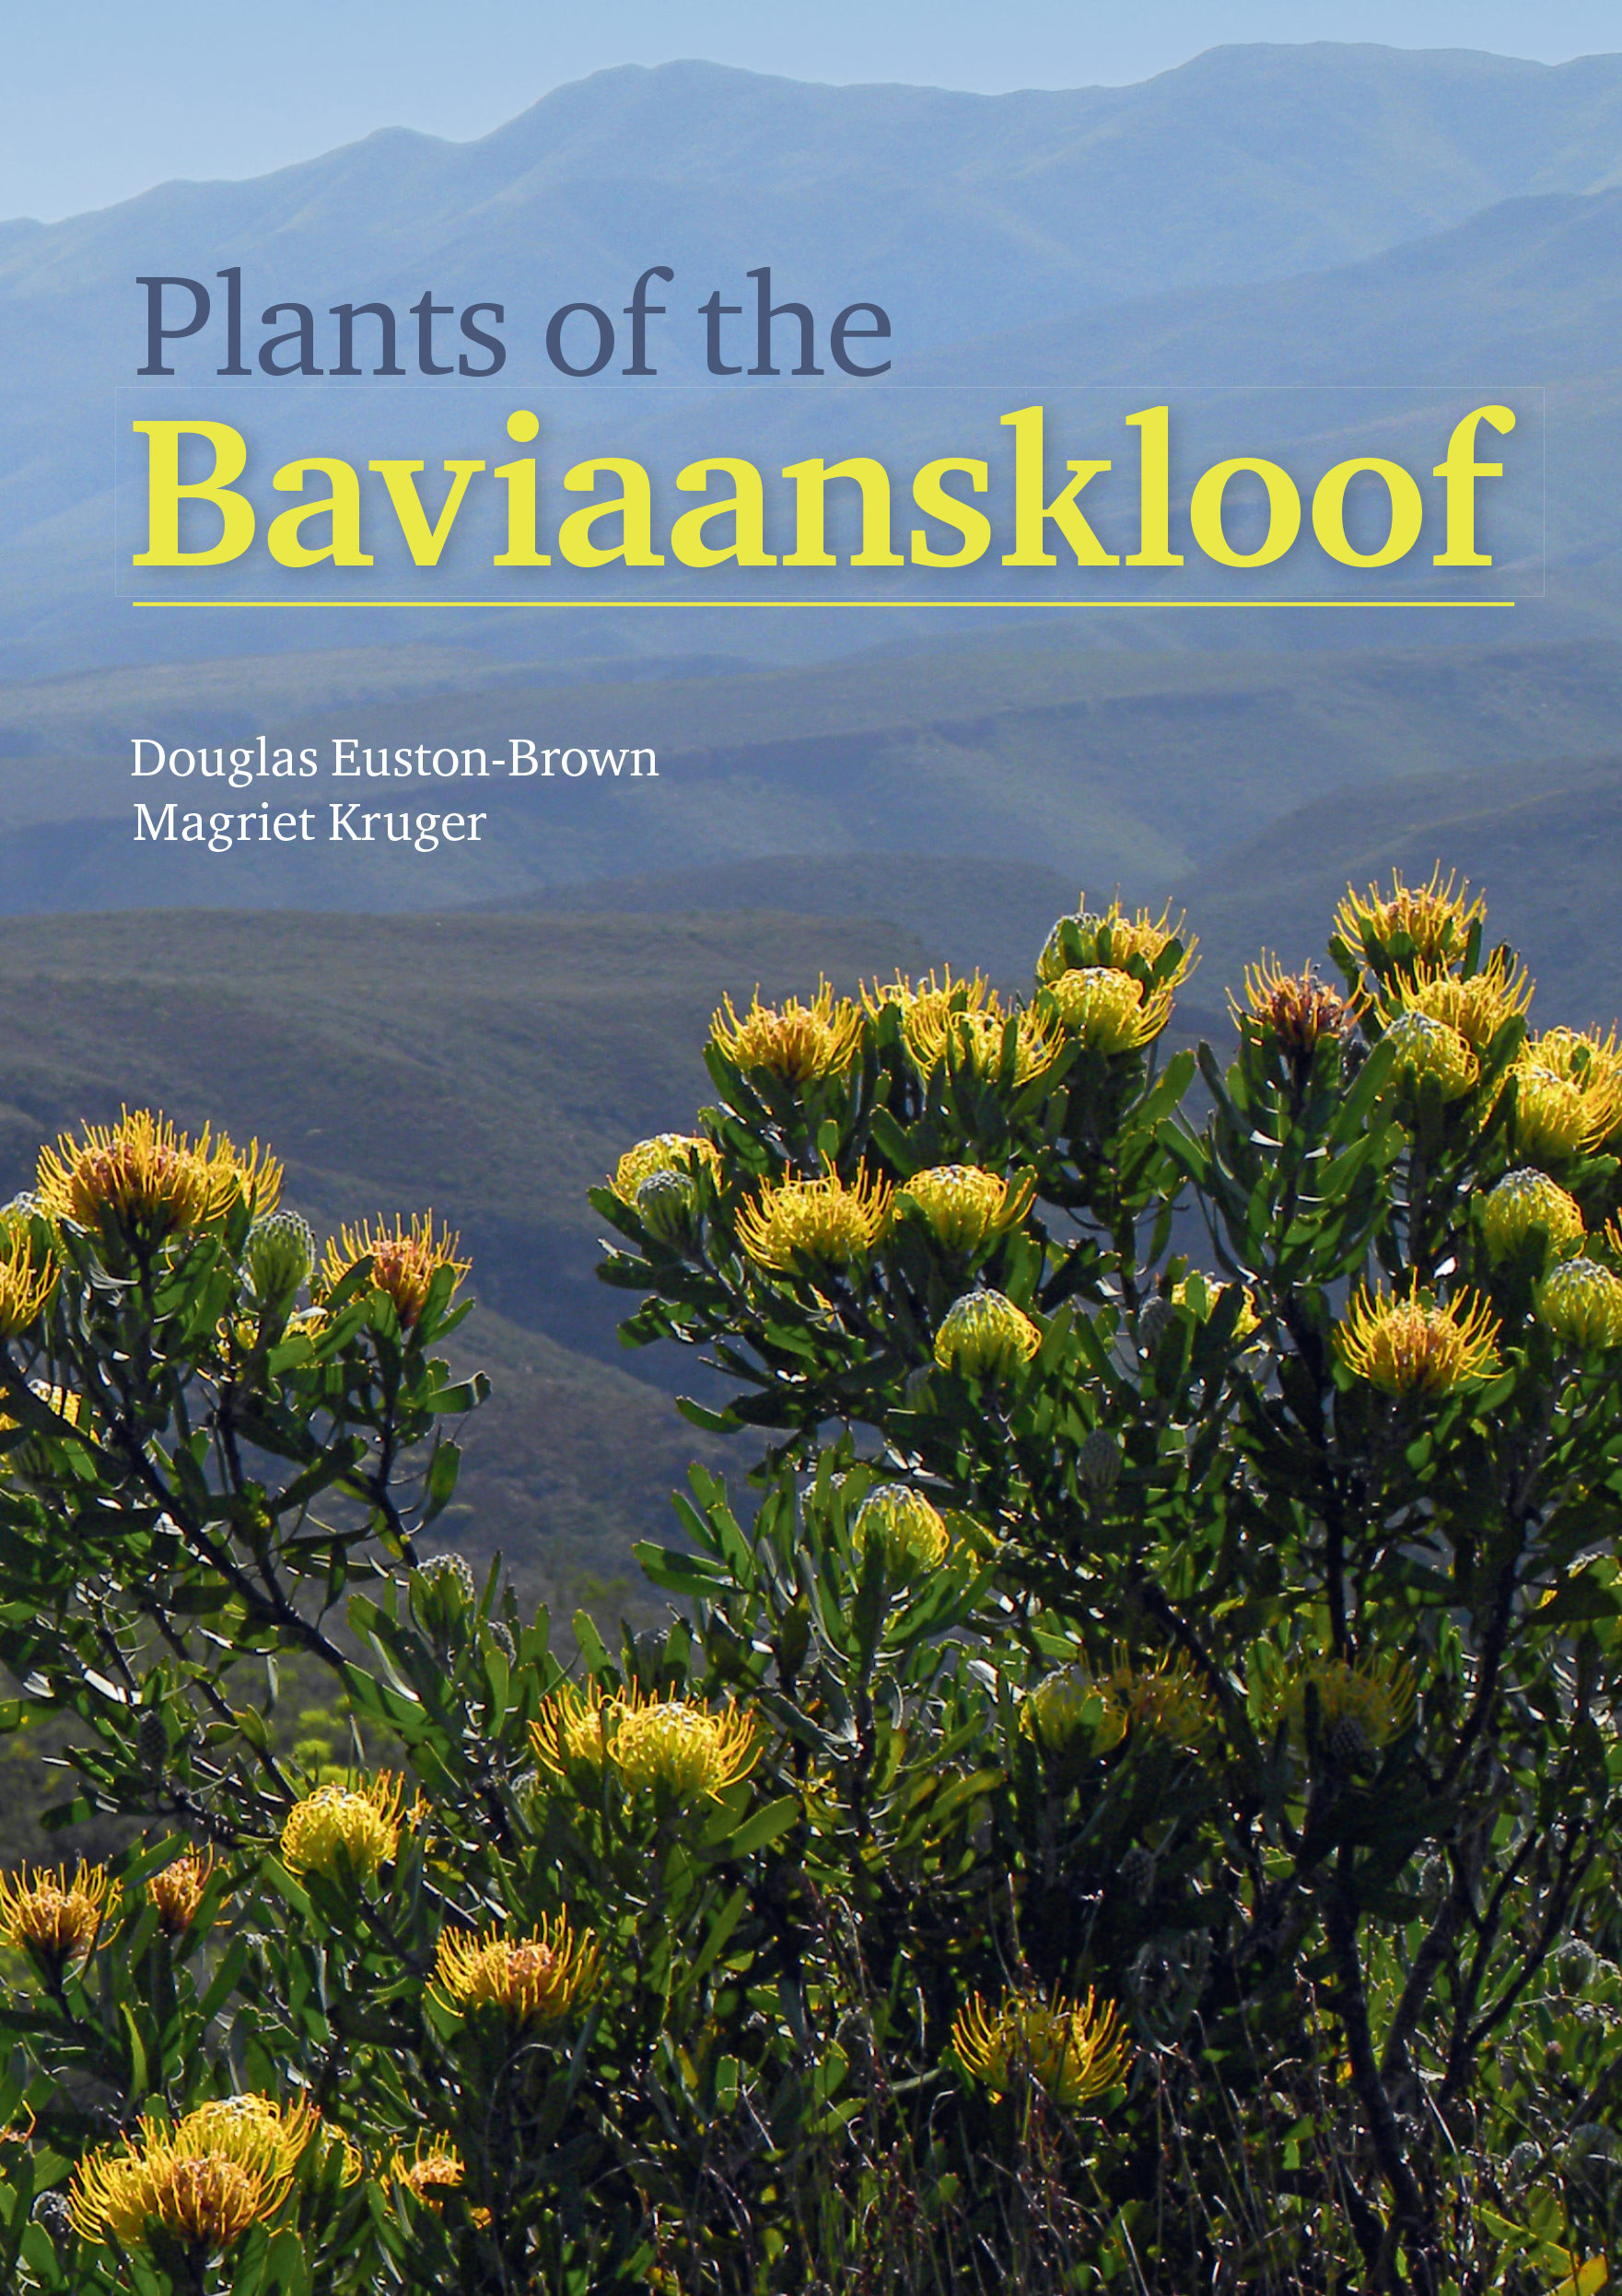 PLANTS OF THE BAVIAANSKLOOF